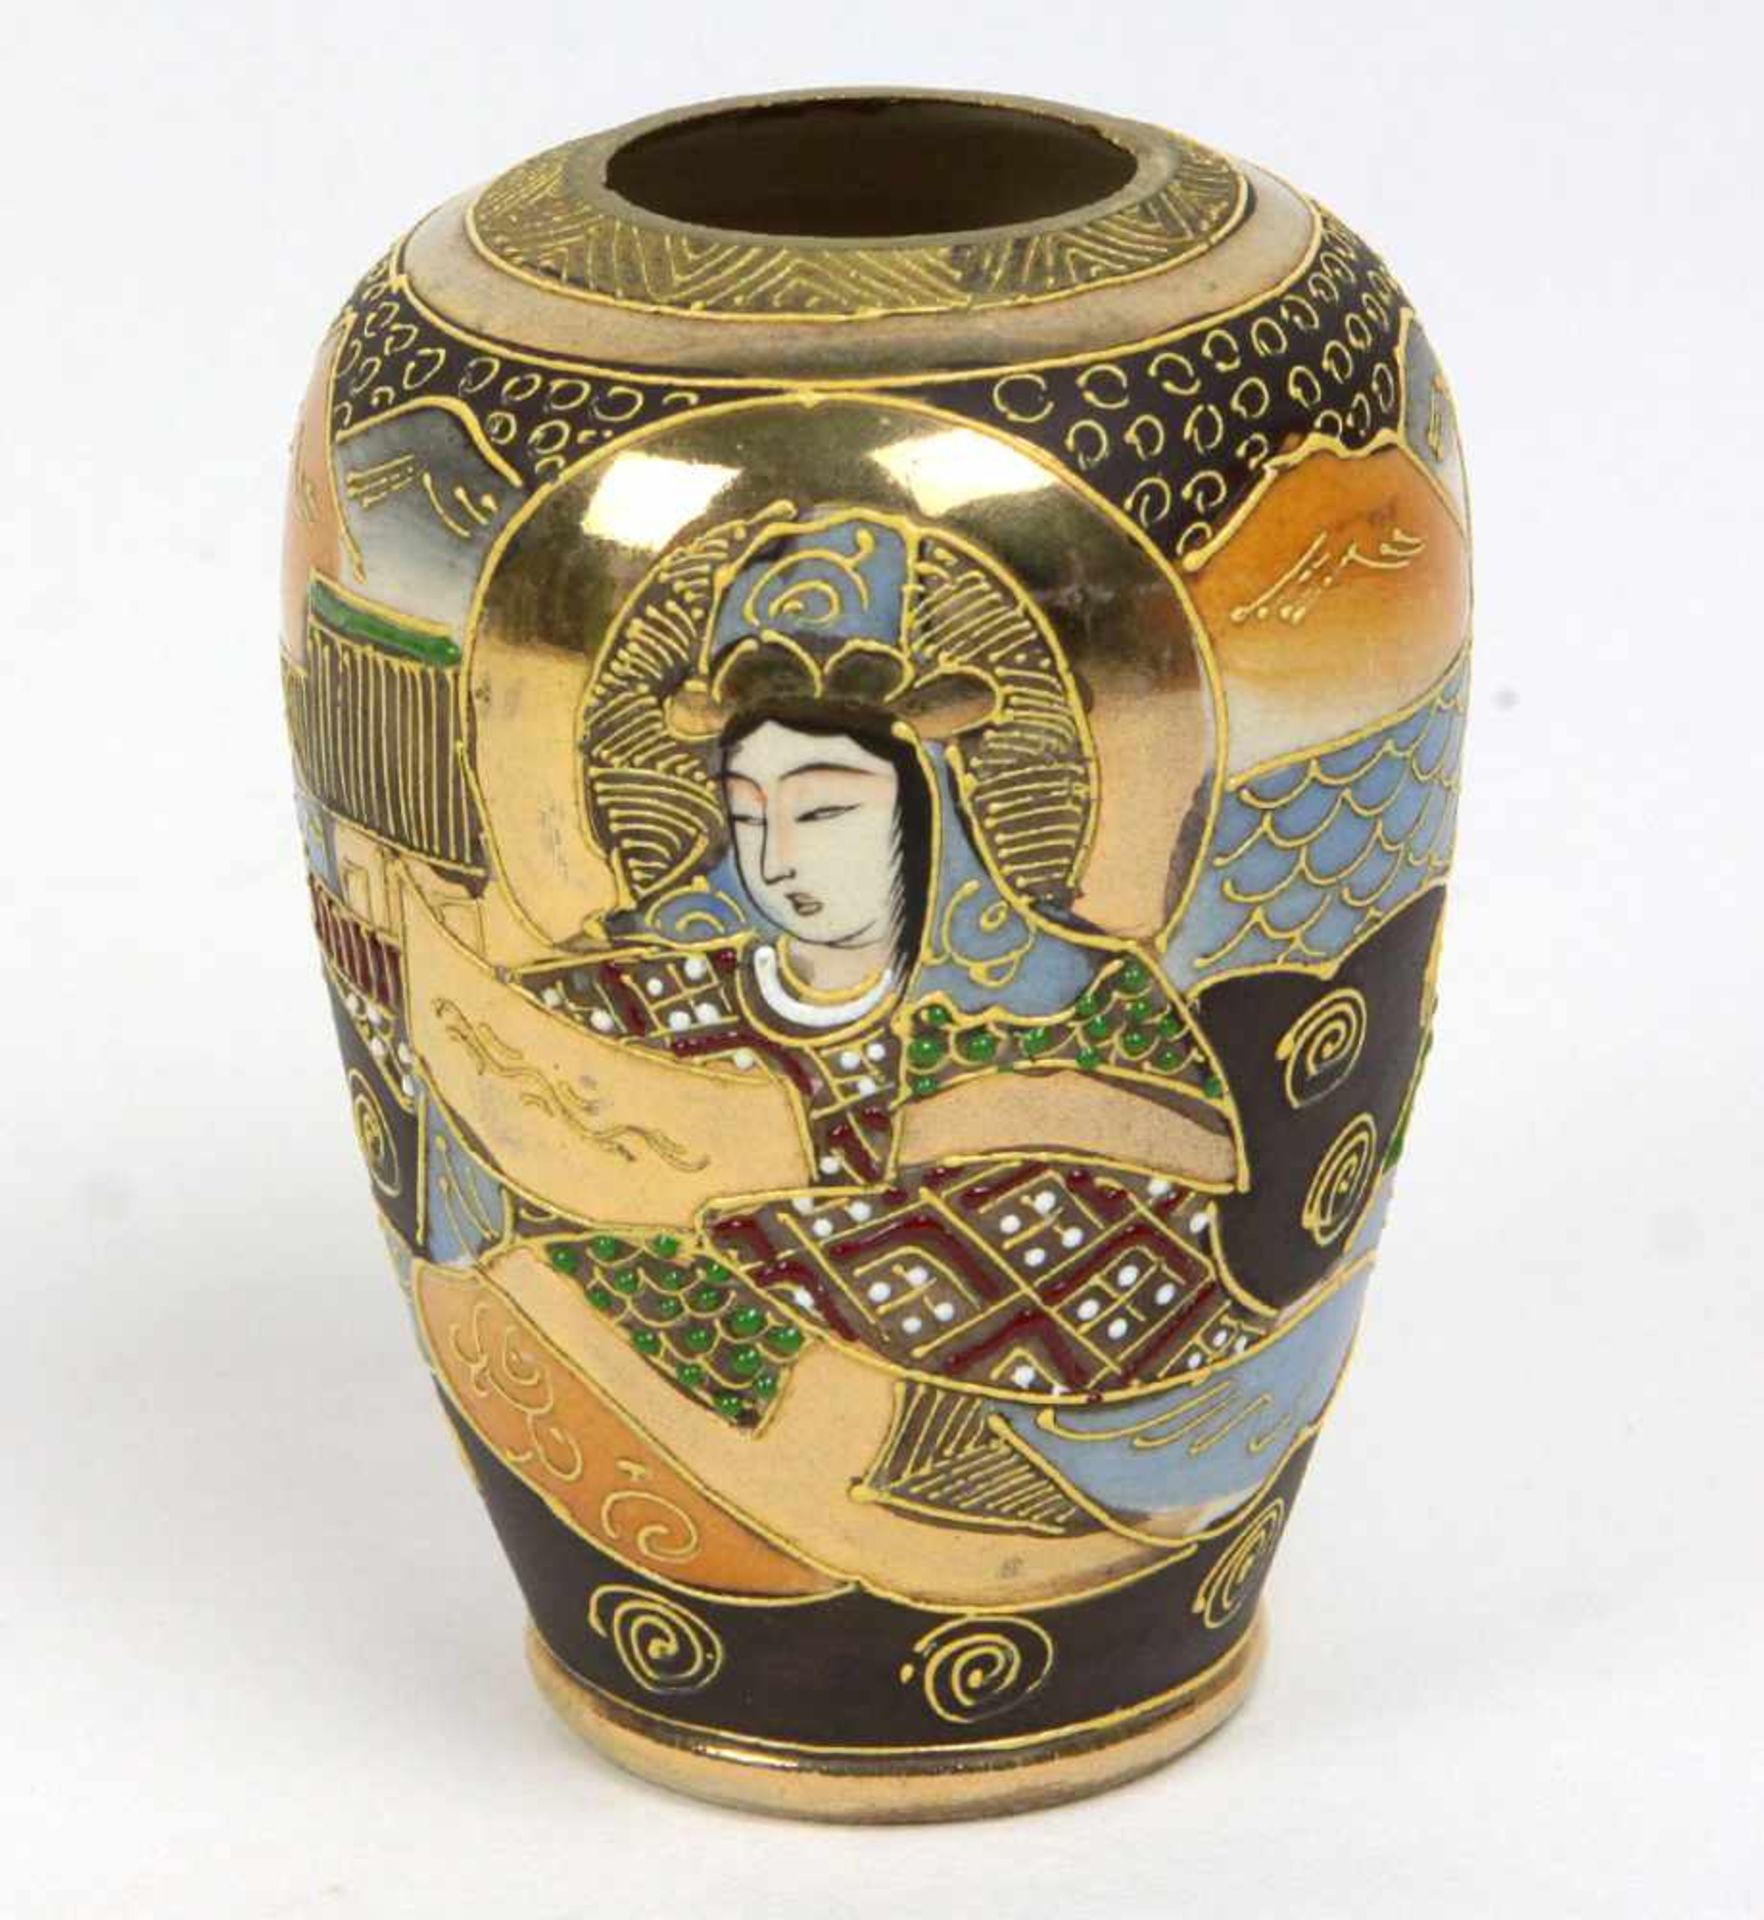 Japan VasePorzellan gemarkt, ovoider Korpus, umlaufende japanische pastos konturierte Handmalerei, H